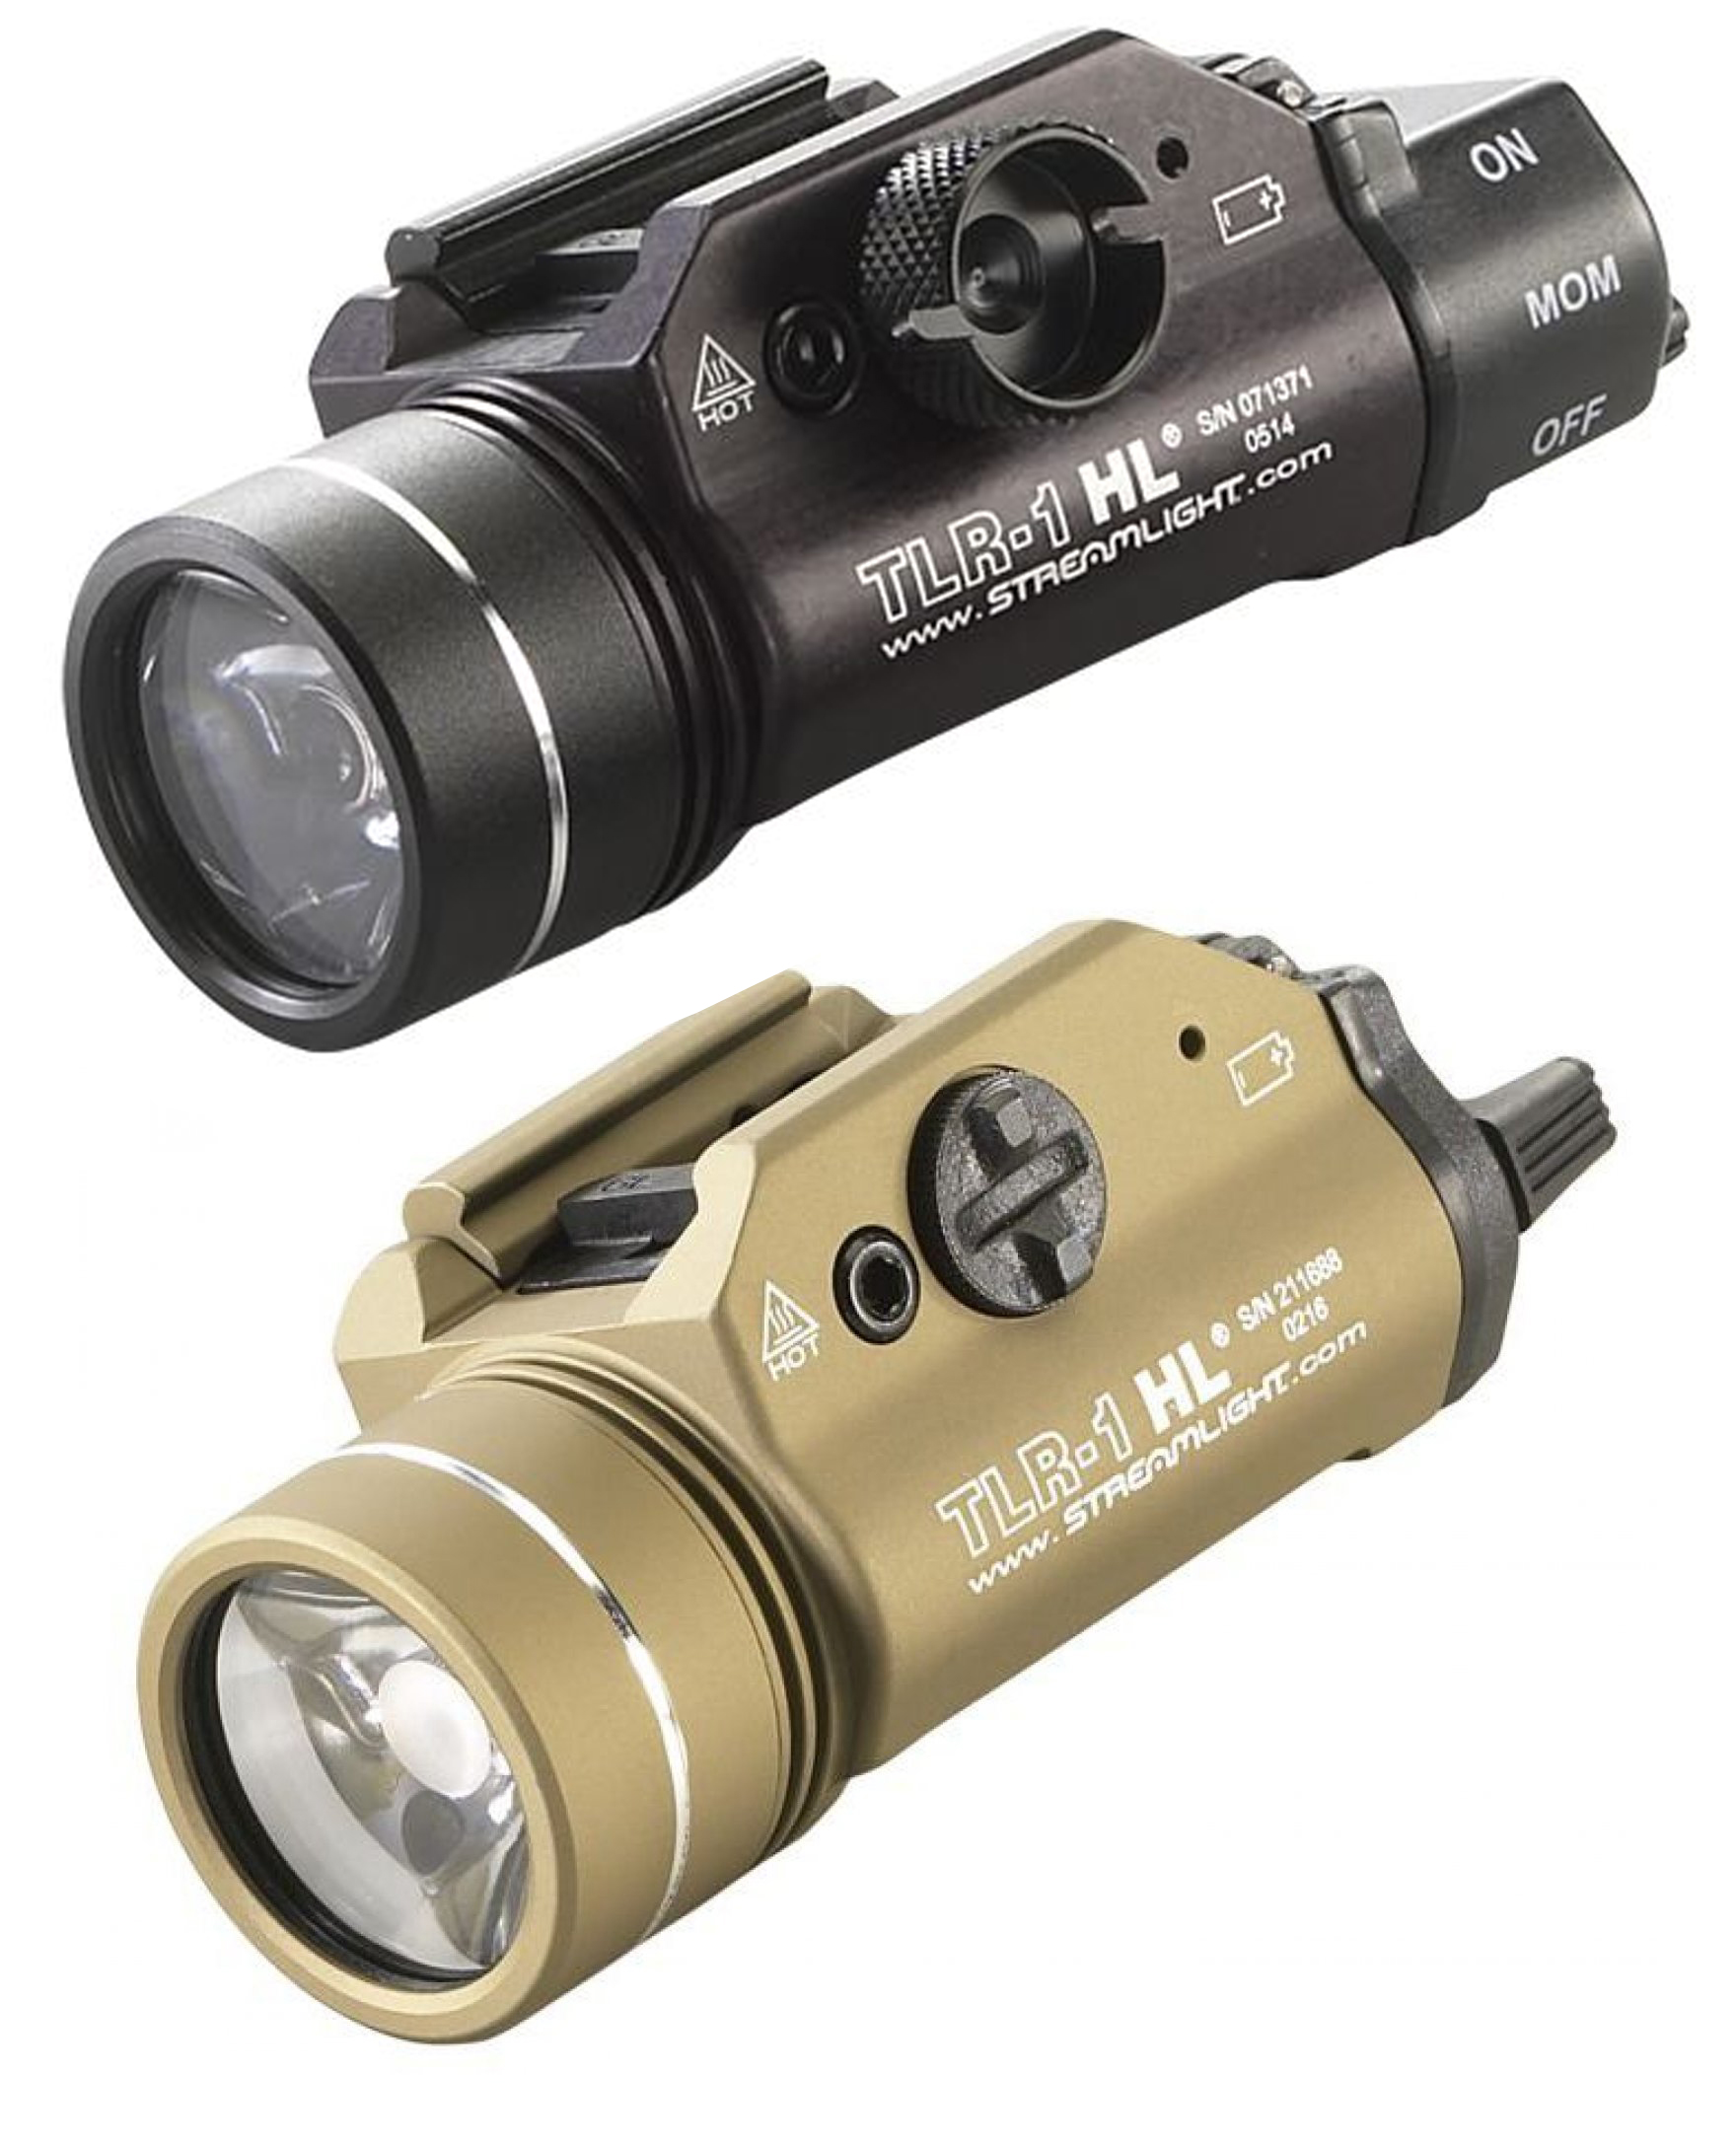 Streamlight TLR-1 1000 Lumen LED Tactical Light FREE S&H 69262, Streamlight TLR-1 Police Equipment, Streamlight TLR-1 Police Weapon Lights, Streamlight Police Weapon Lights.